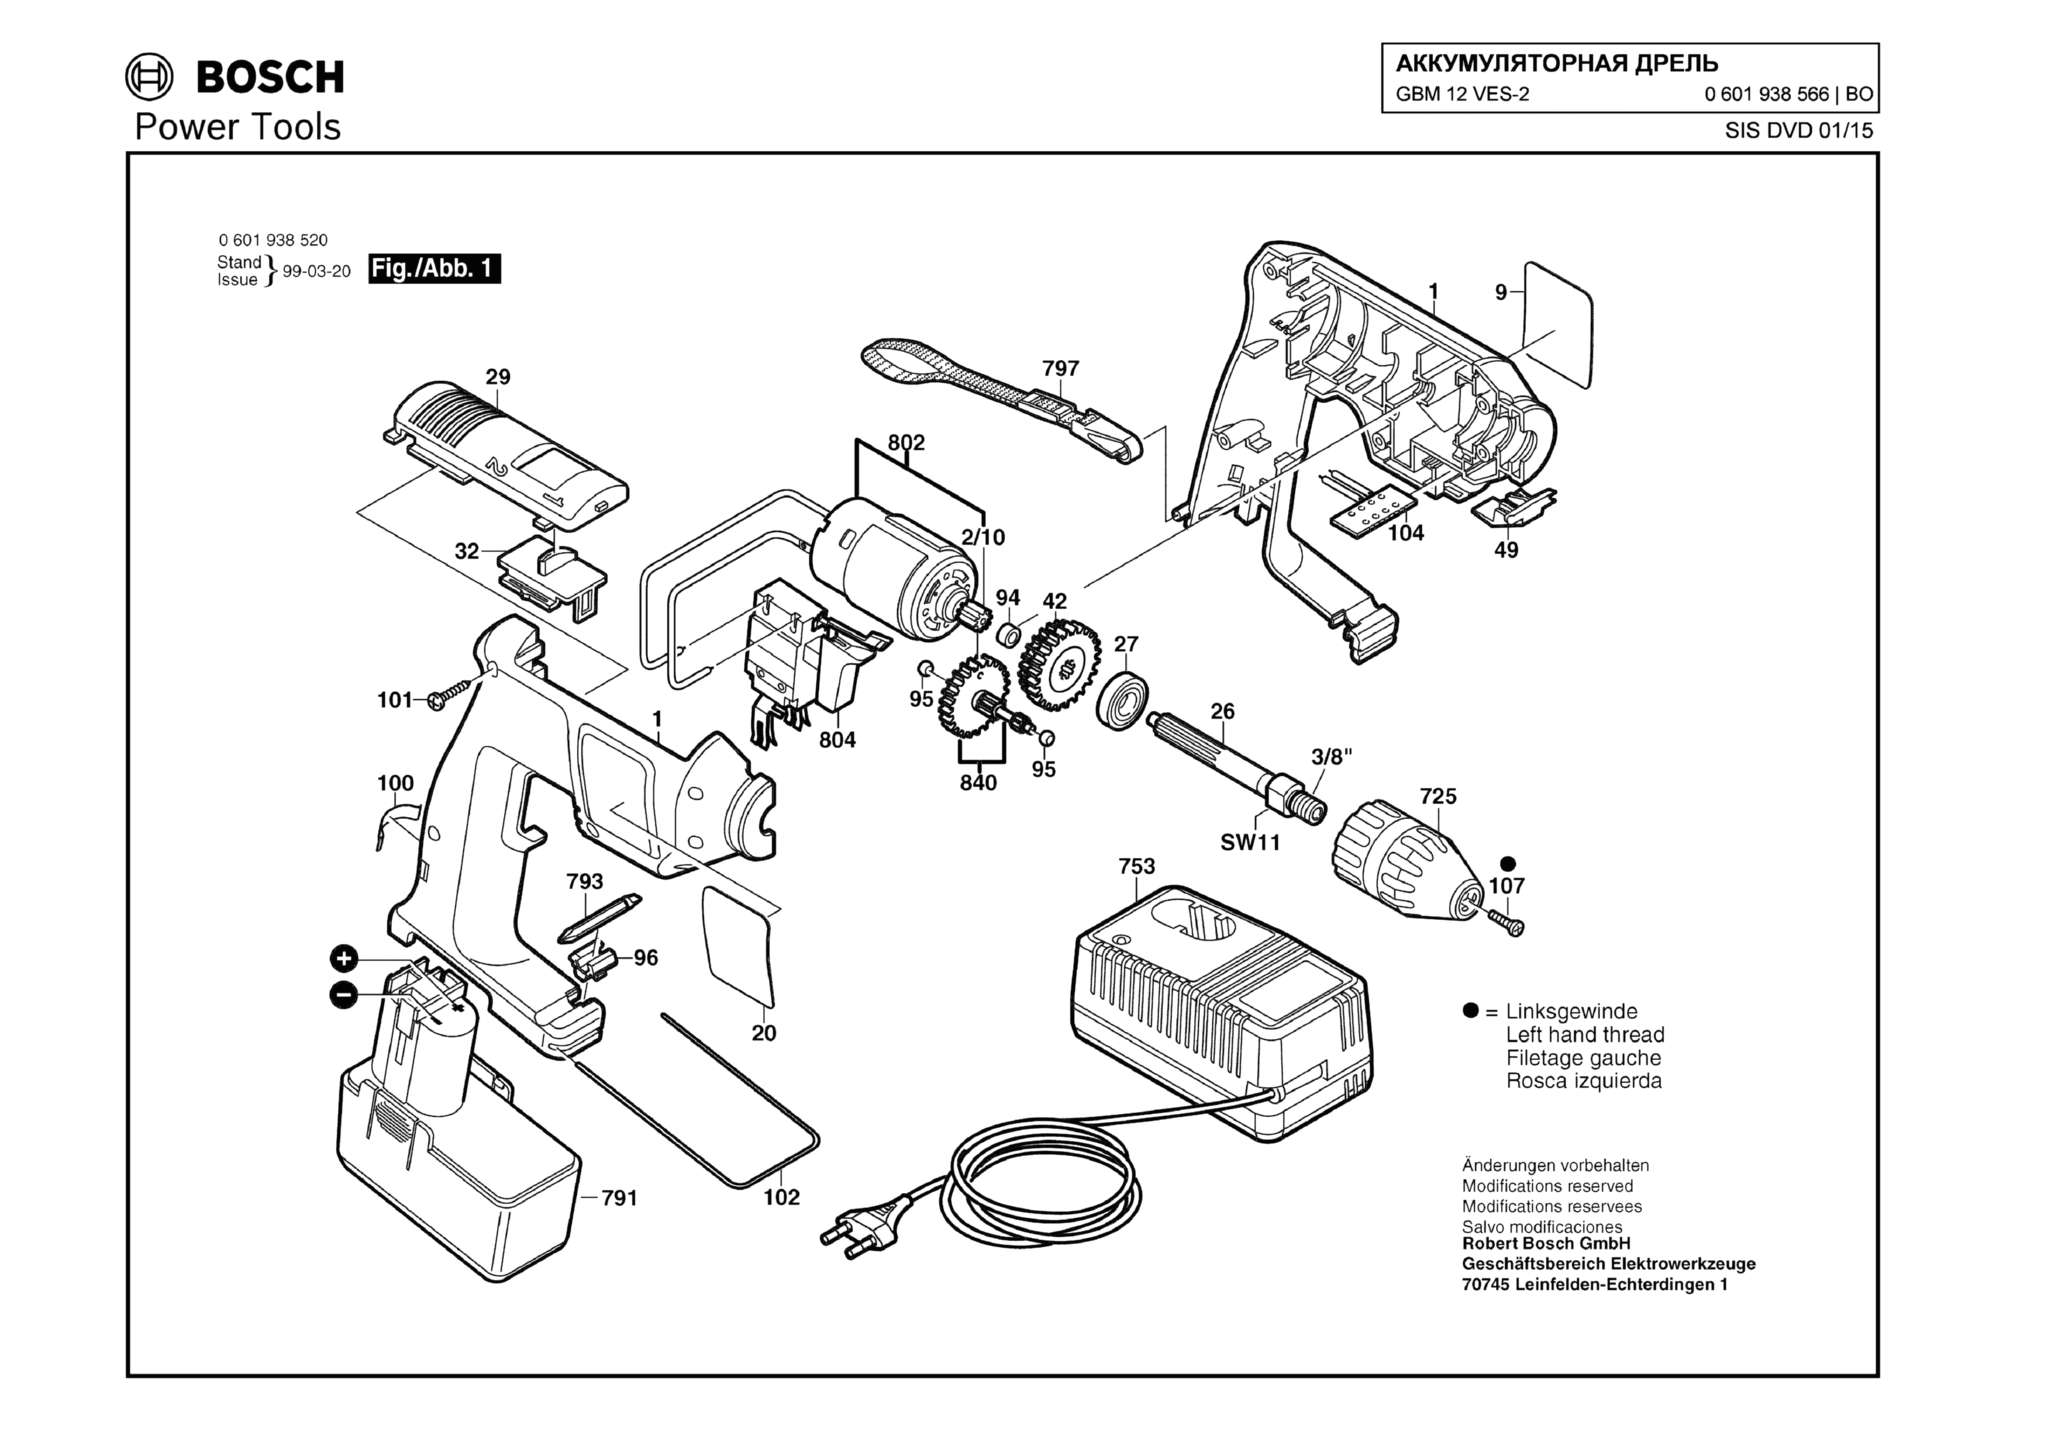 Запчасти, схема и деталировка Bosch GBM 12 VES-2 (ТИП 0601938566)